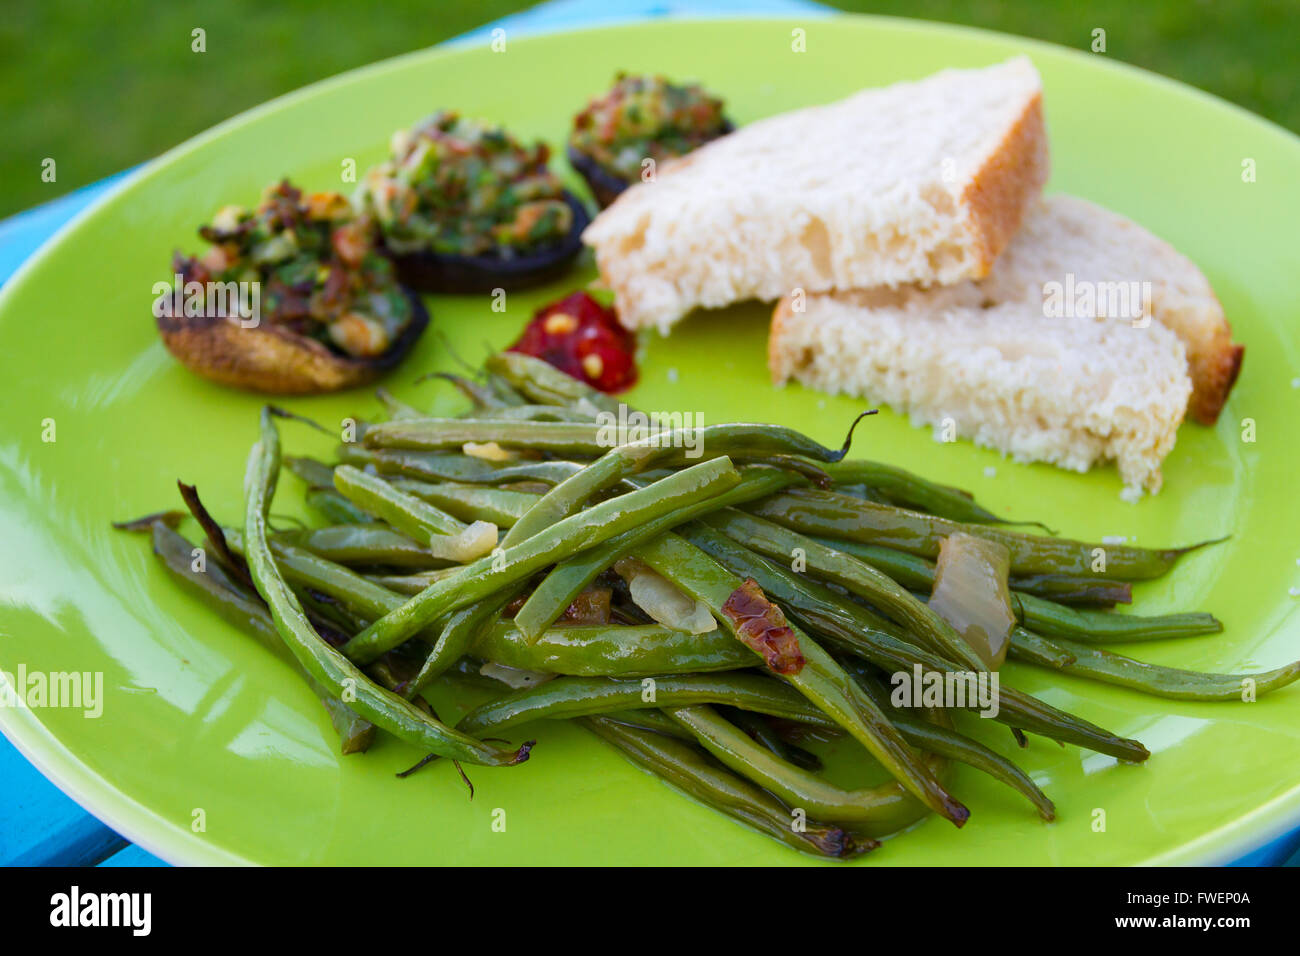 Questo pasto gourmet di Funghi ripieni e fagioli verdi servita su una piastra verde con un po' di pane bianco. Questa è la cena ma l'IMA Foto Stock